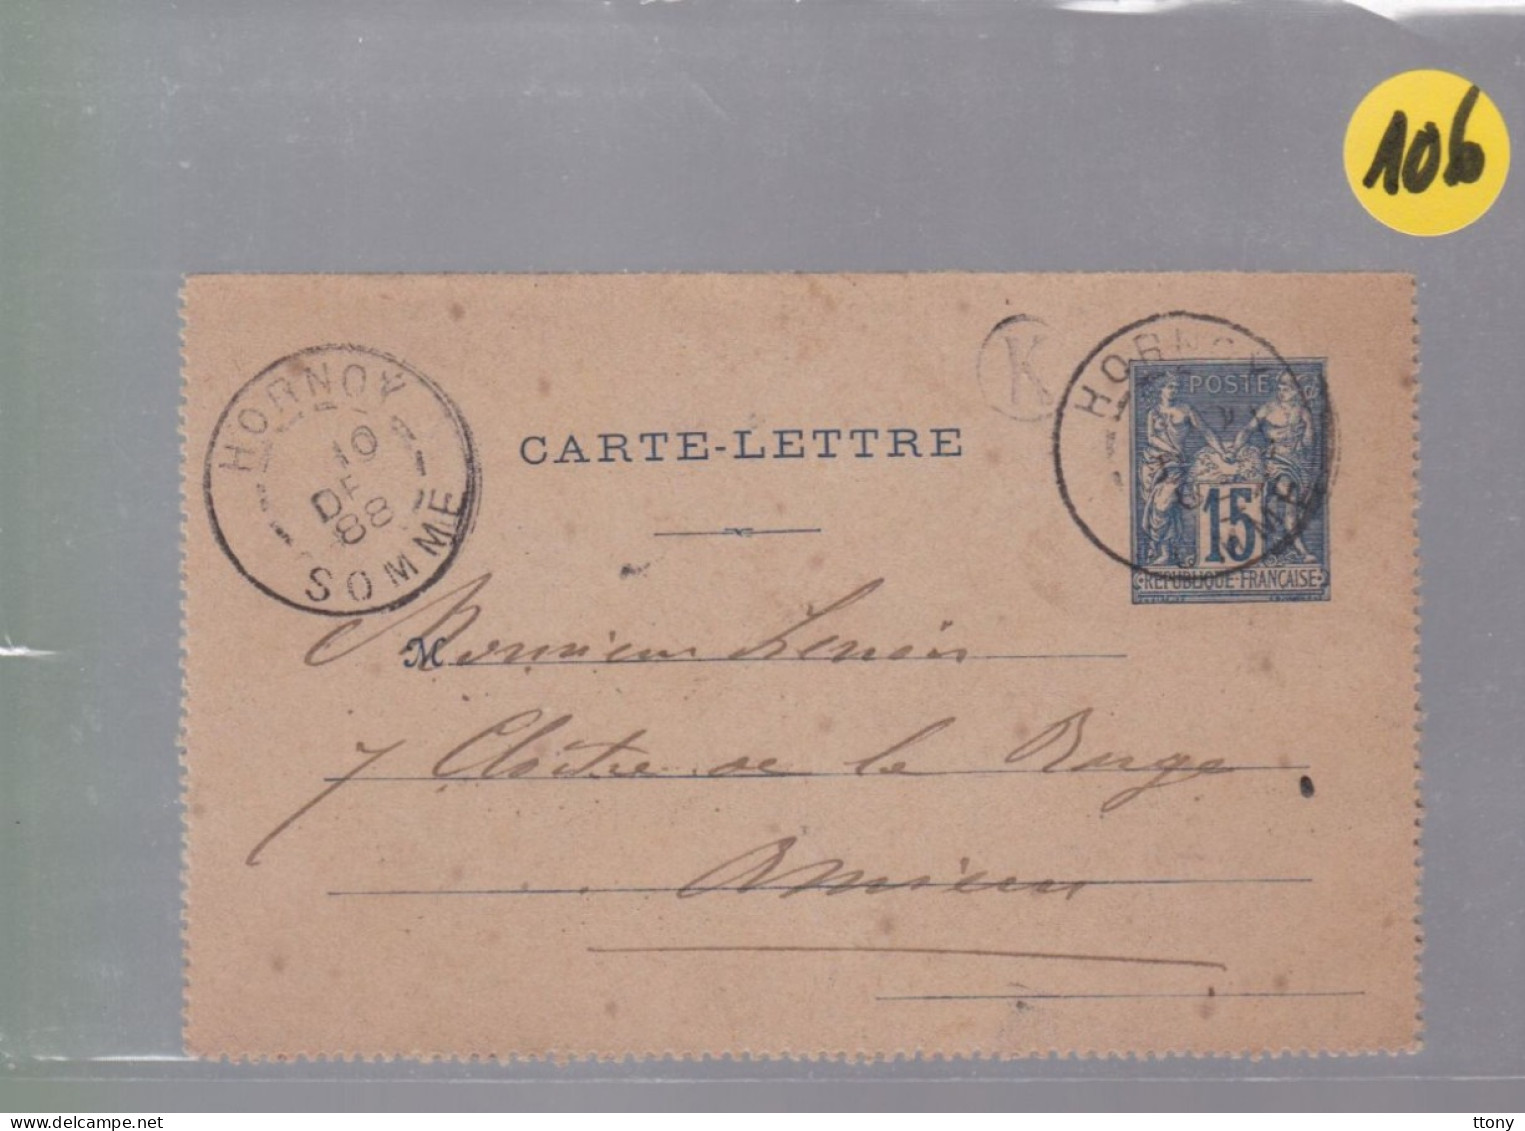 Entier Postal   15 C Bleu    Type Sage   Sur  Carte Lettre    Pour Amiens   1888 - 1877-1920: Semi Modern Period